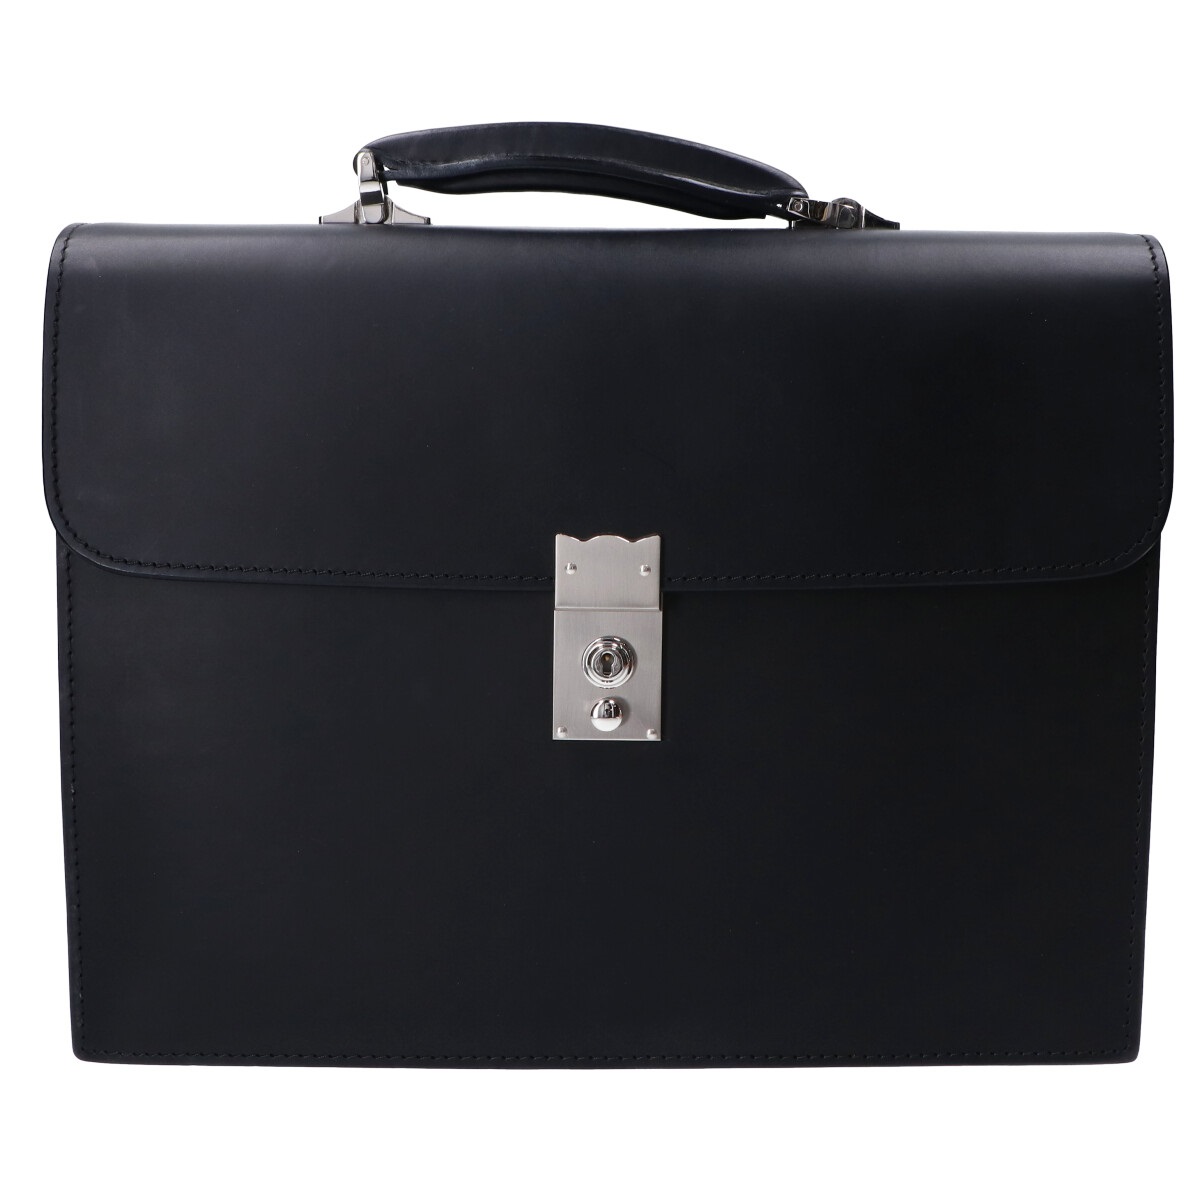 大峡製鞄の0969-3-BTL 冠式ビジネスバッグ2気室 カーフレザー ビジネスバッグの買取実績です。